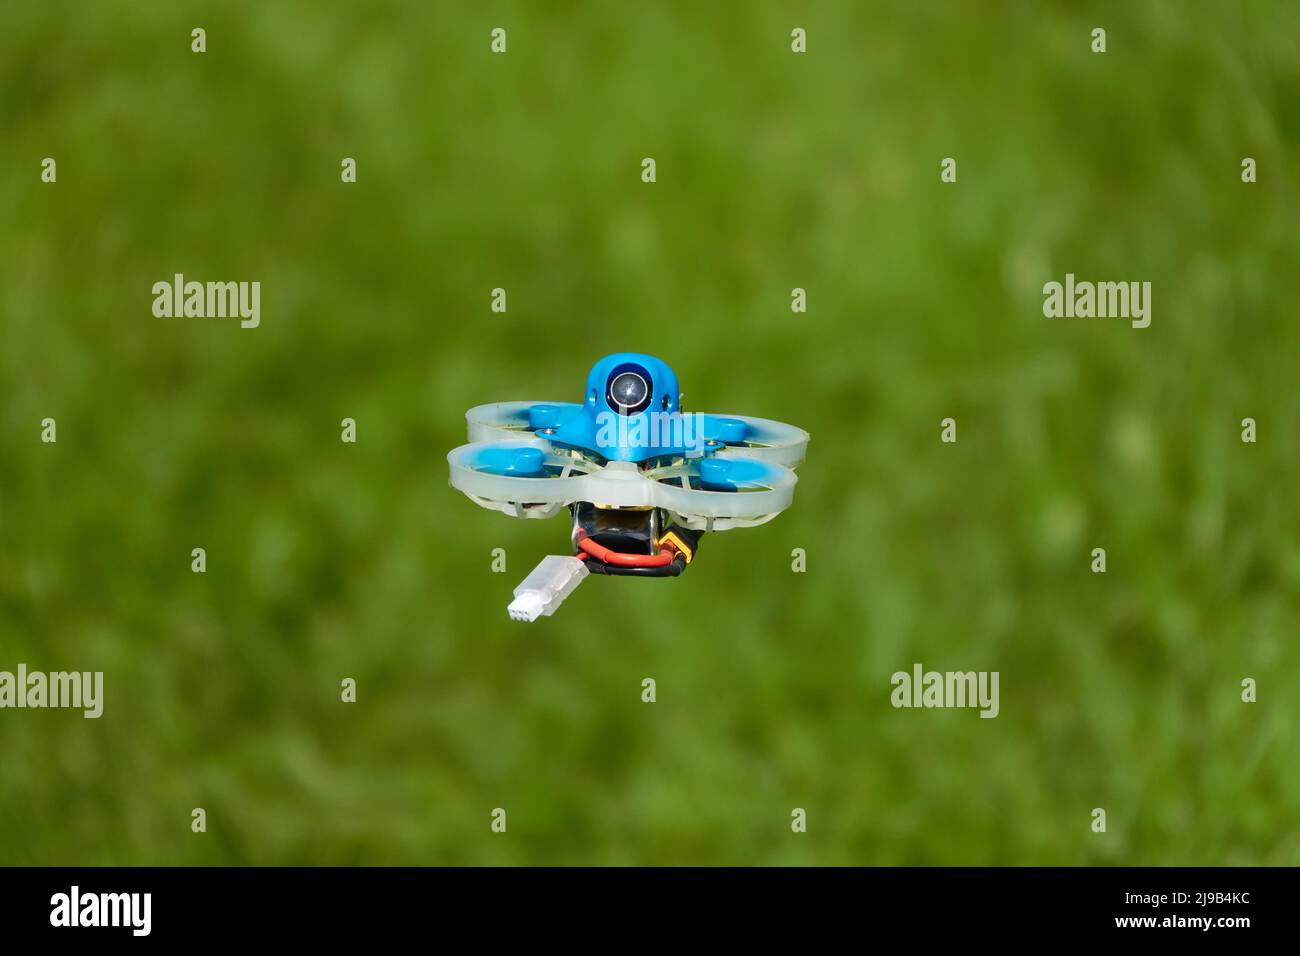 Petit bleu Drone également quad de course, avec la gondole de protection en blanc avec un fond flou de vert.Allemagne. Banque D'Images